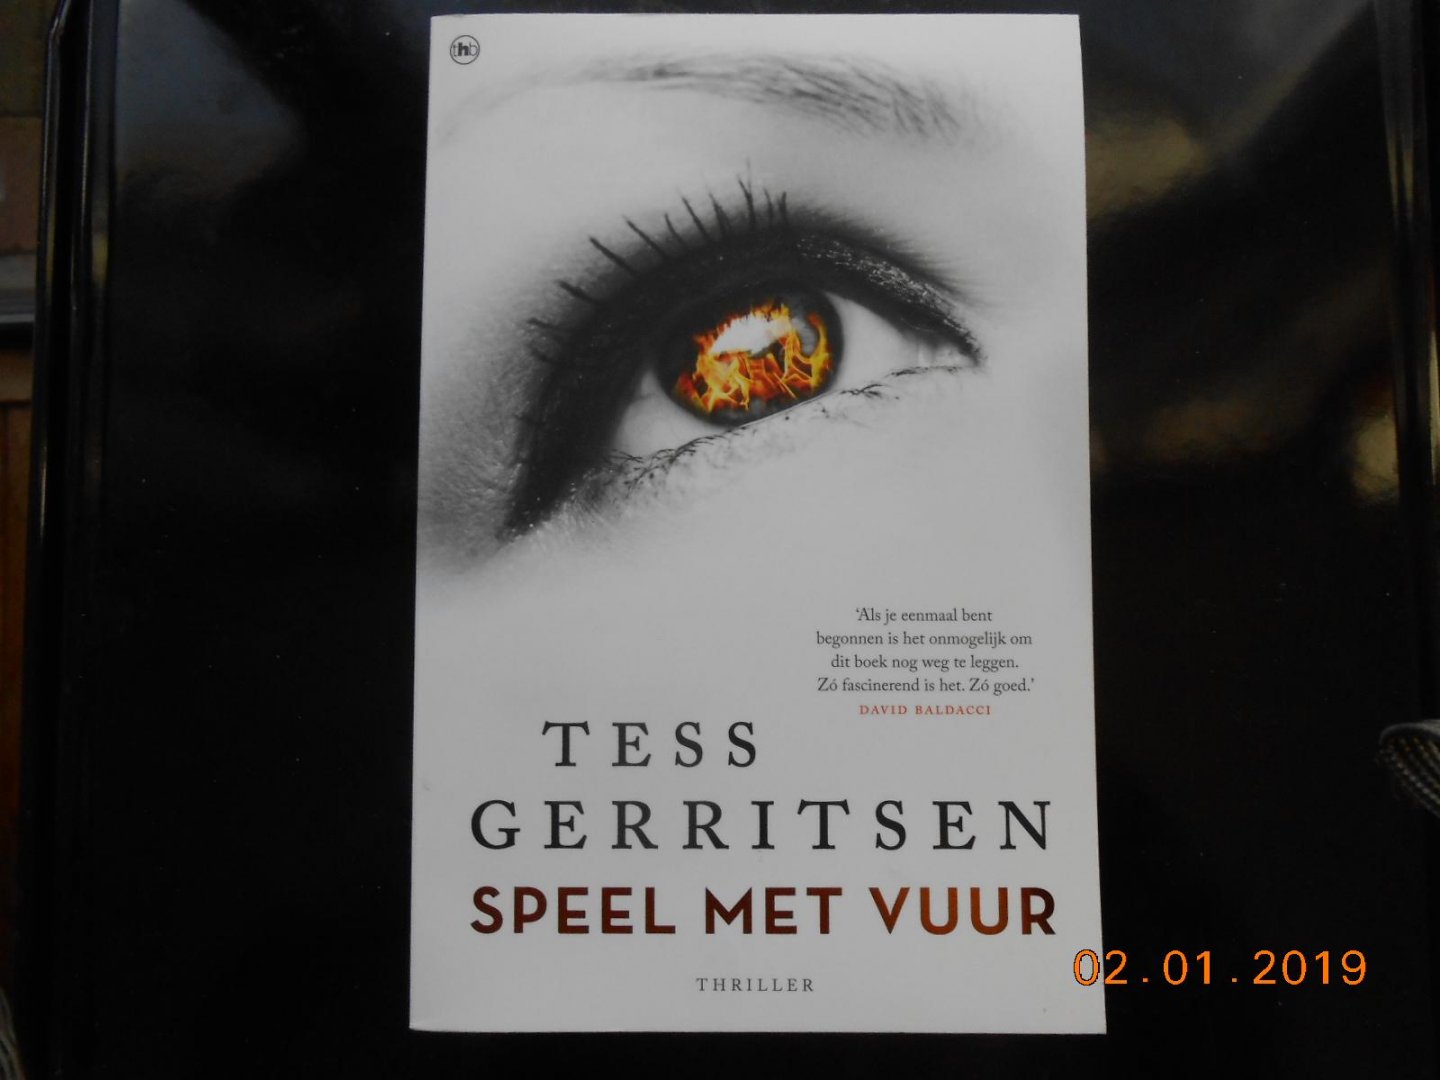 Gerritsen, Tess - Speel met vuur / thriller